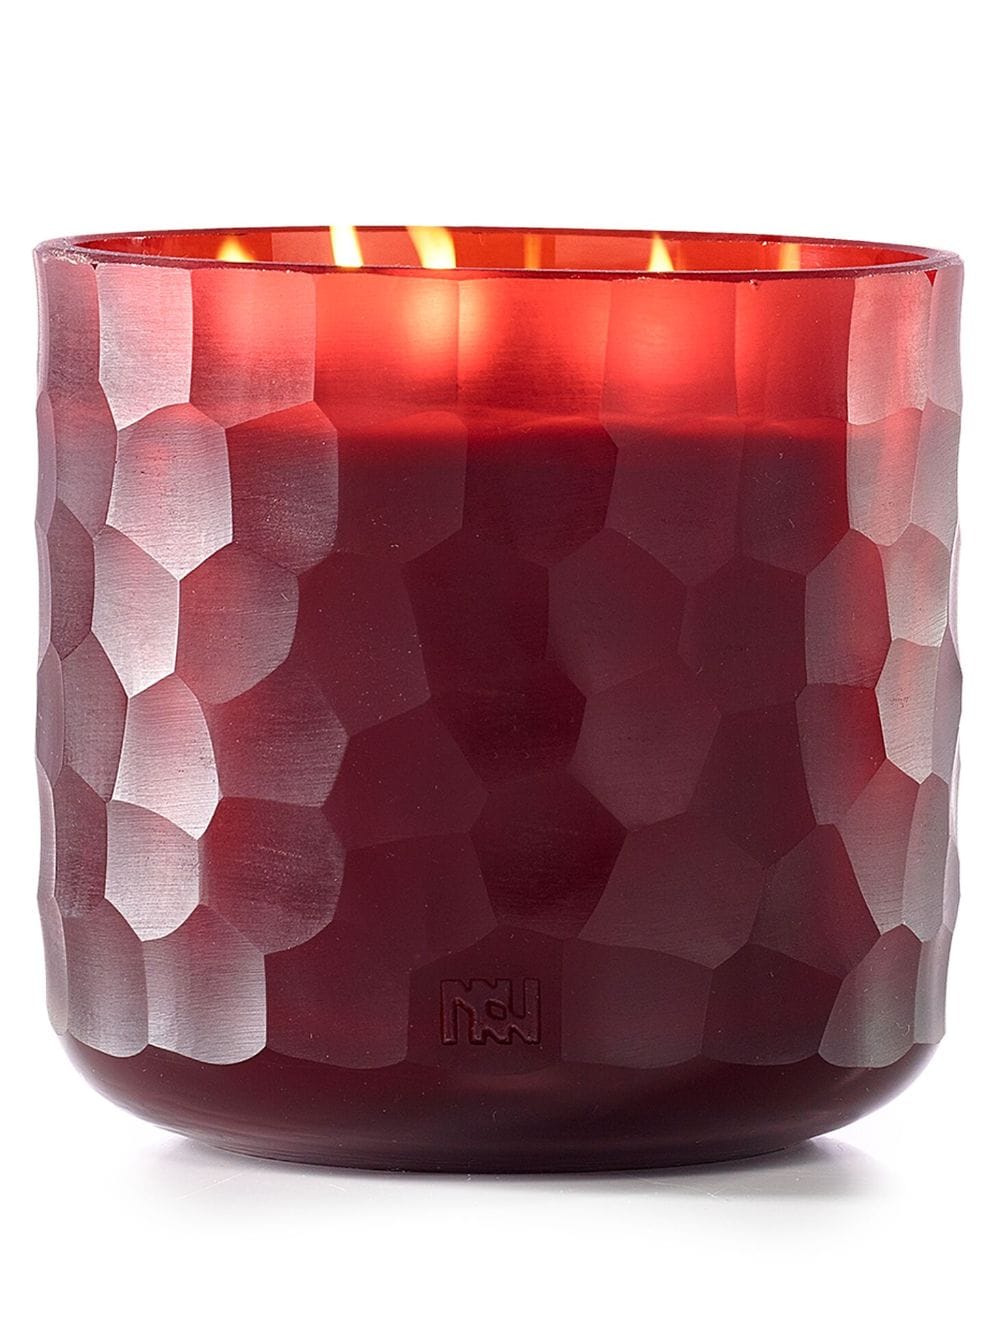 Onno Große Kerze mit Manyara-Duft 2800g - Rot von Onno